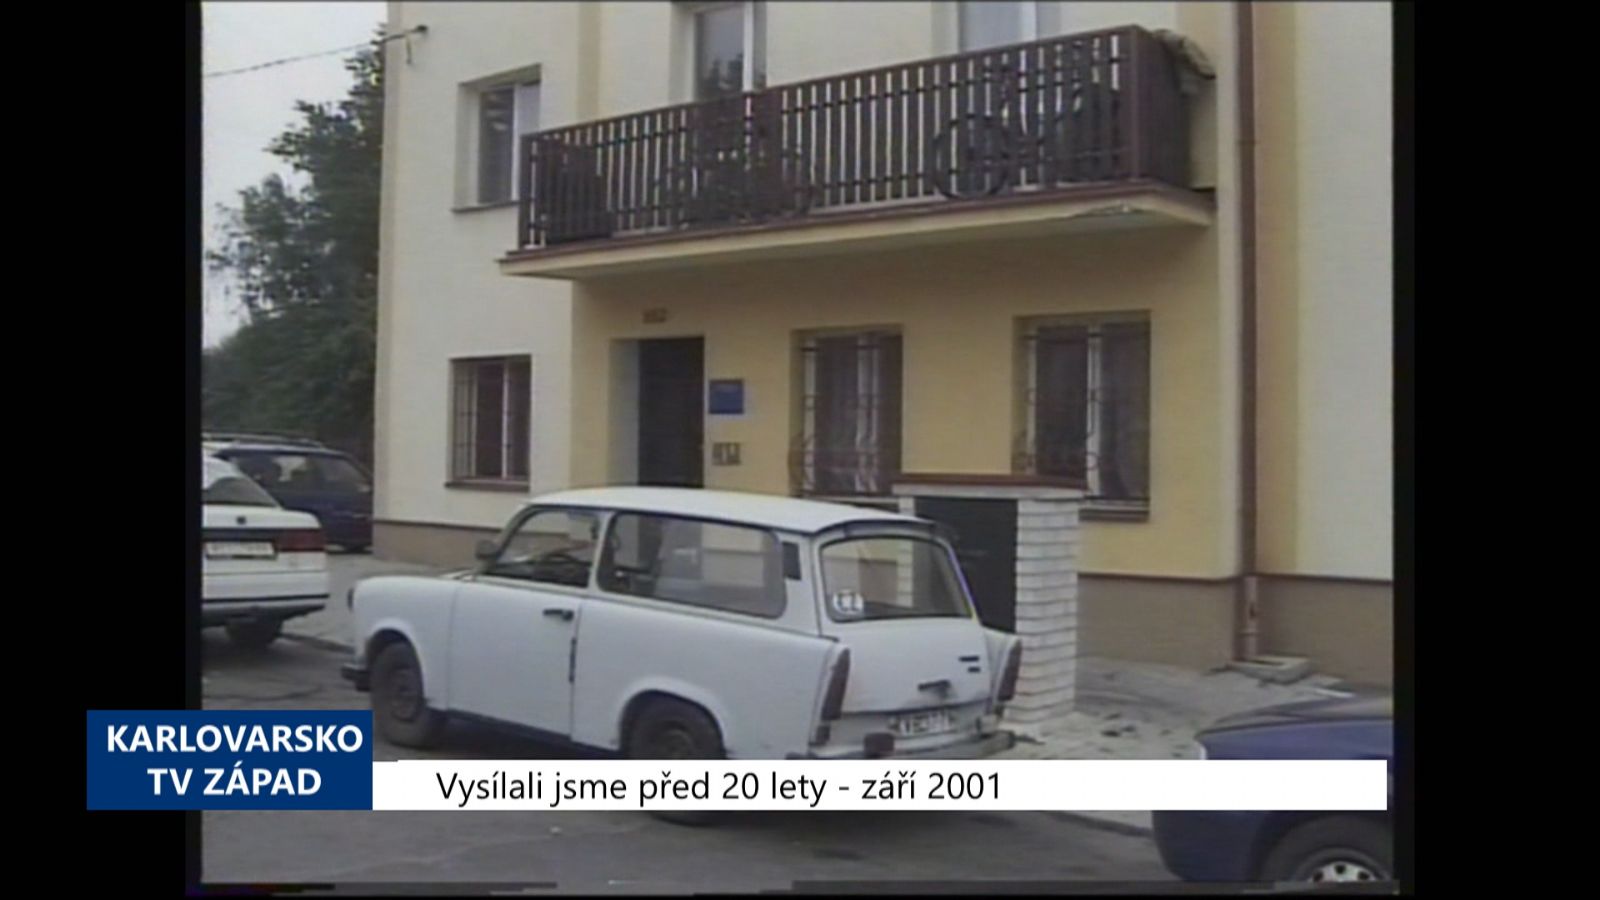 2001 – Sokolov: Sociální služby nejspíše přejdou pod správu Kraje (TV Západ)